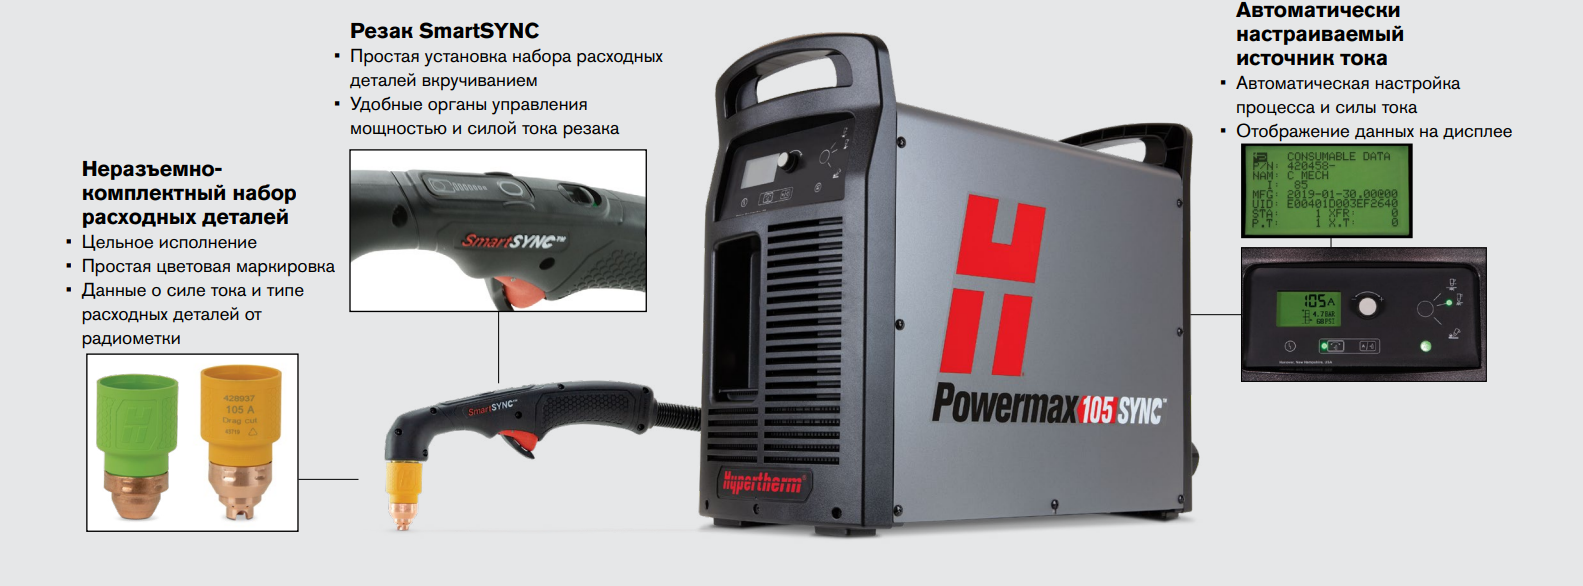 Powermax105 SYNC